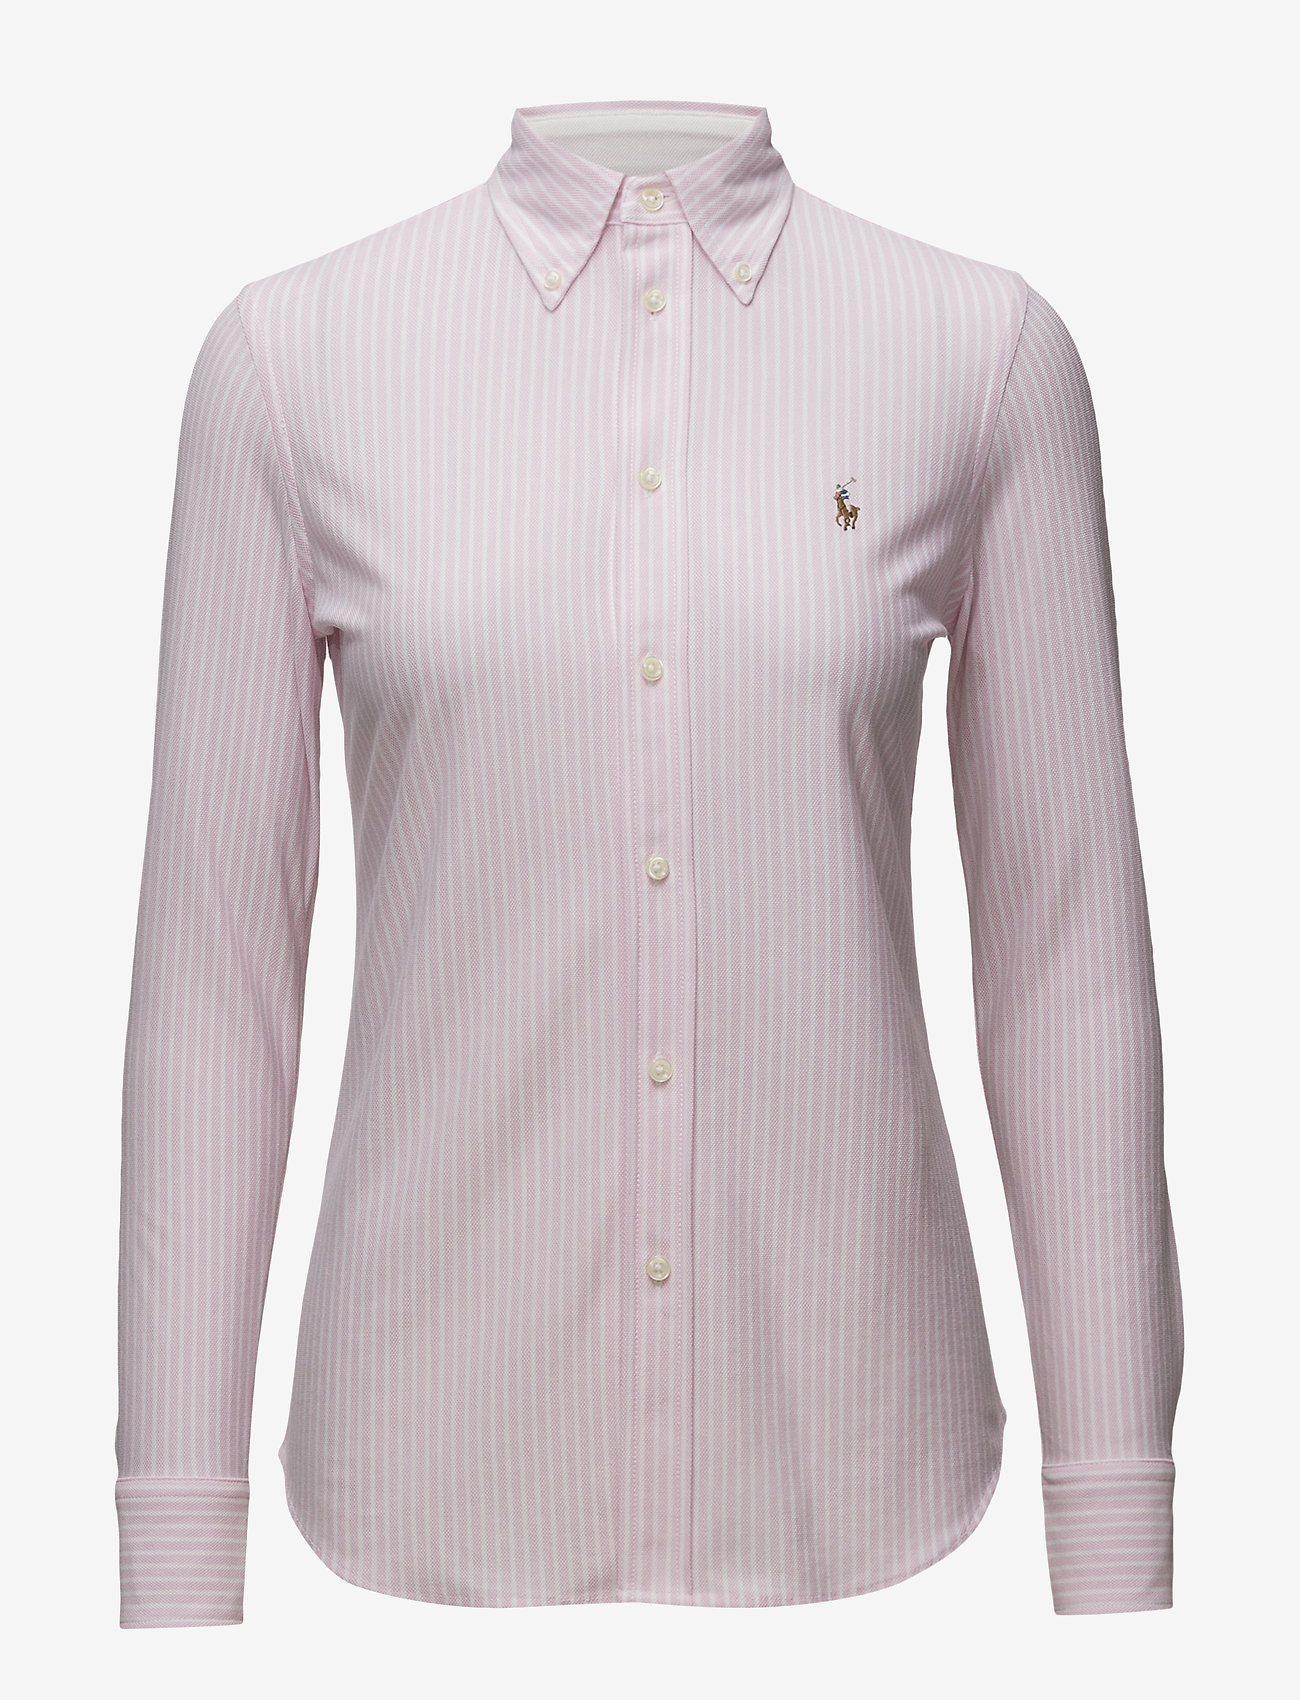 Striped Knit Oxford Shirt (Carmel Pink/white) (125 €) - Polo Ralph ...